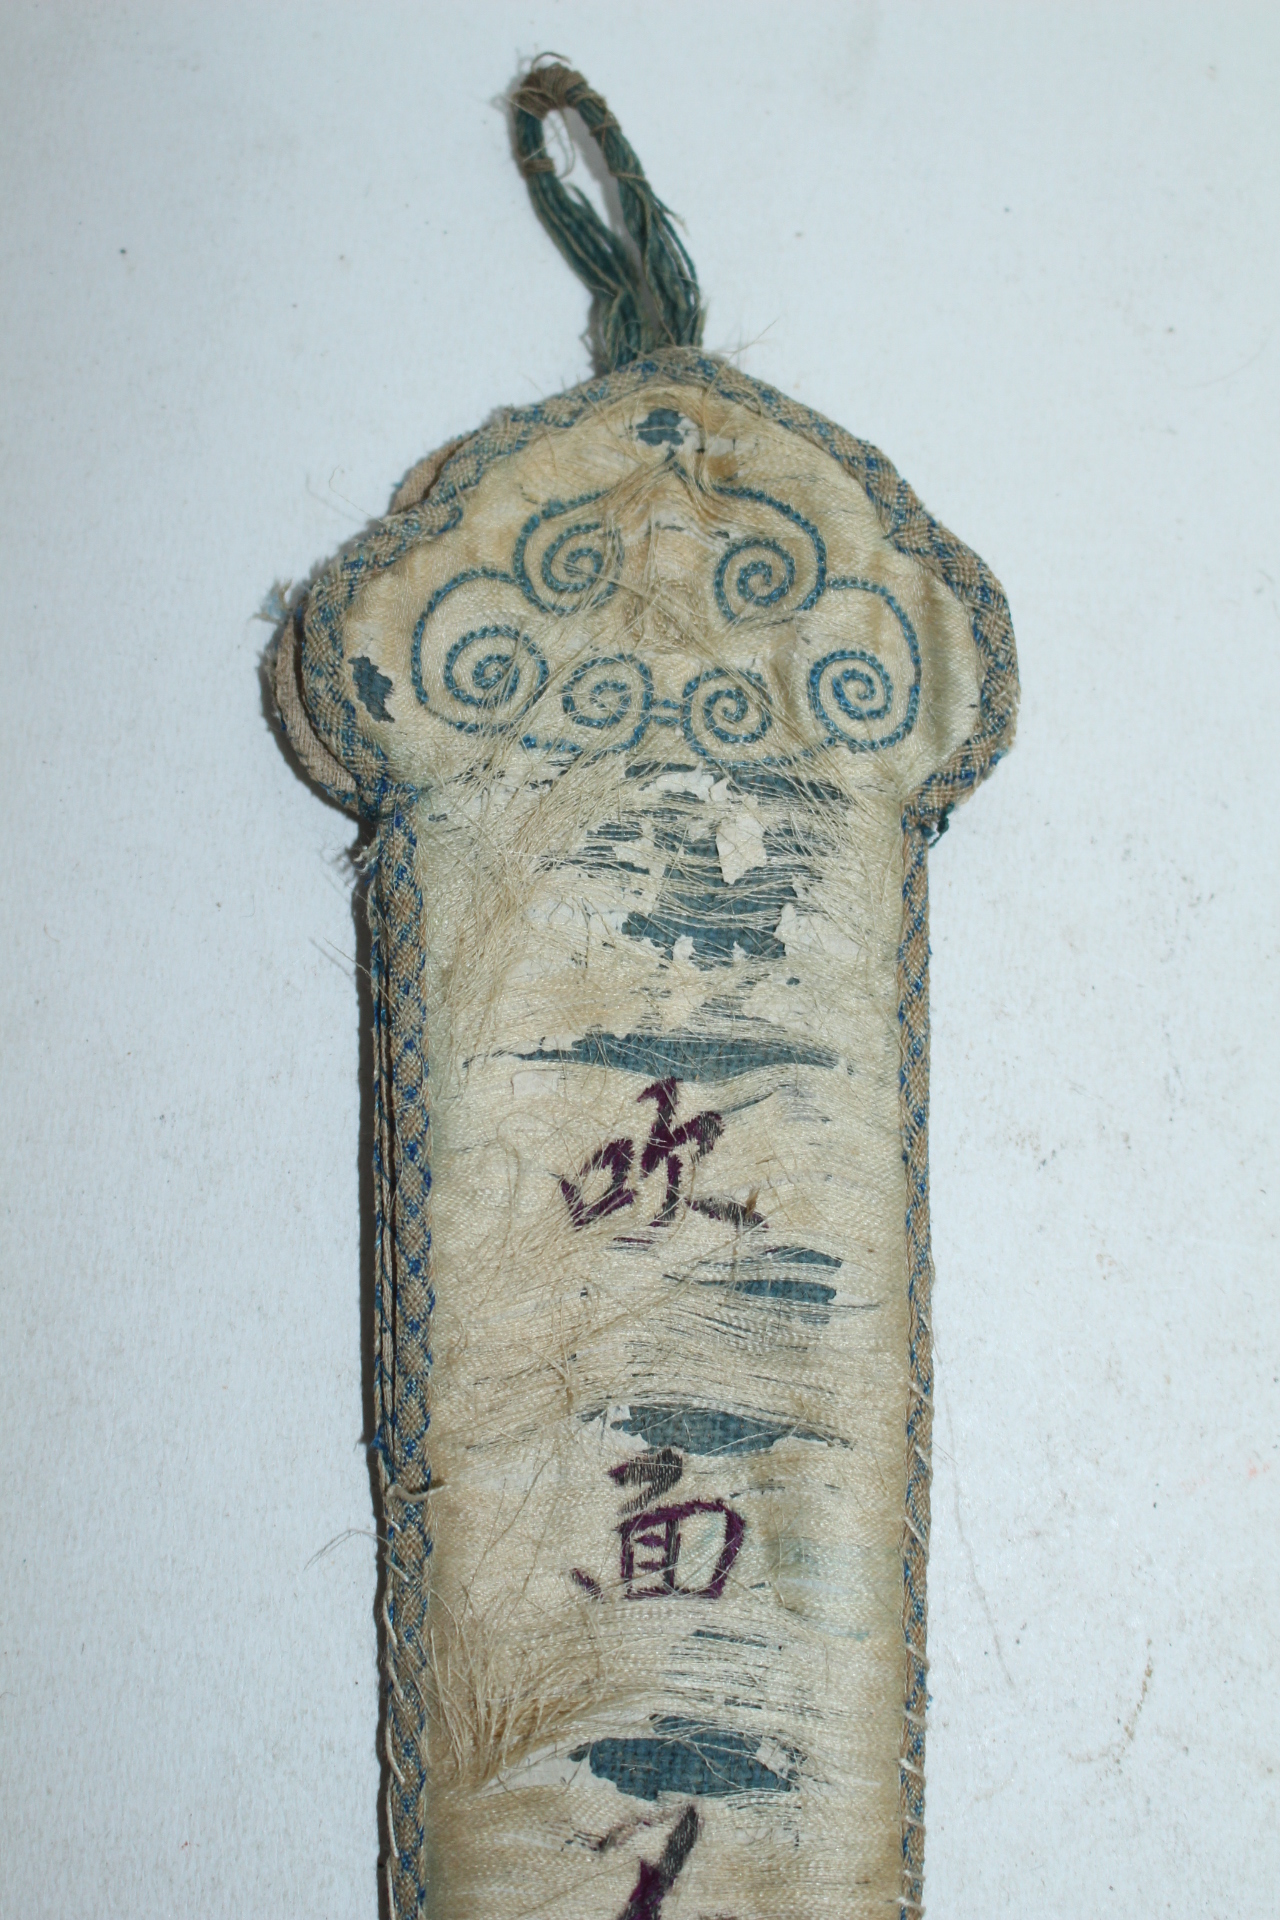 중국 청대 천에 문자가새겨진 작품